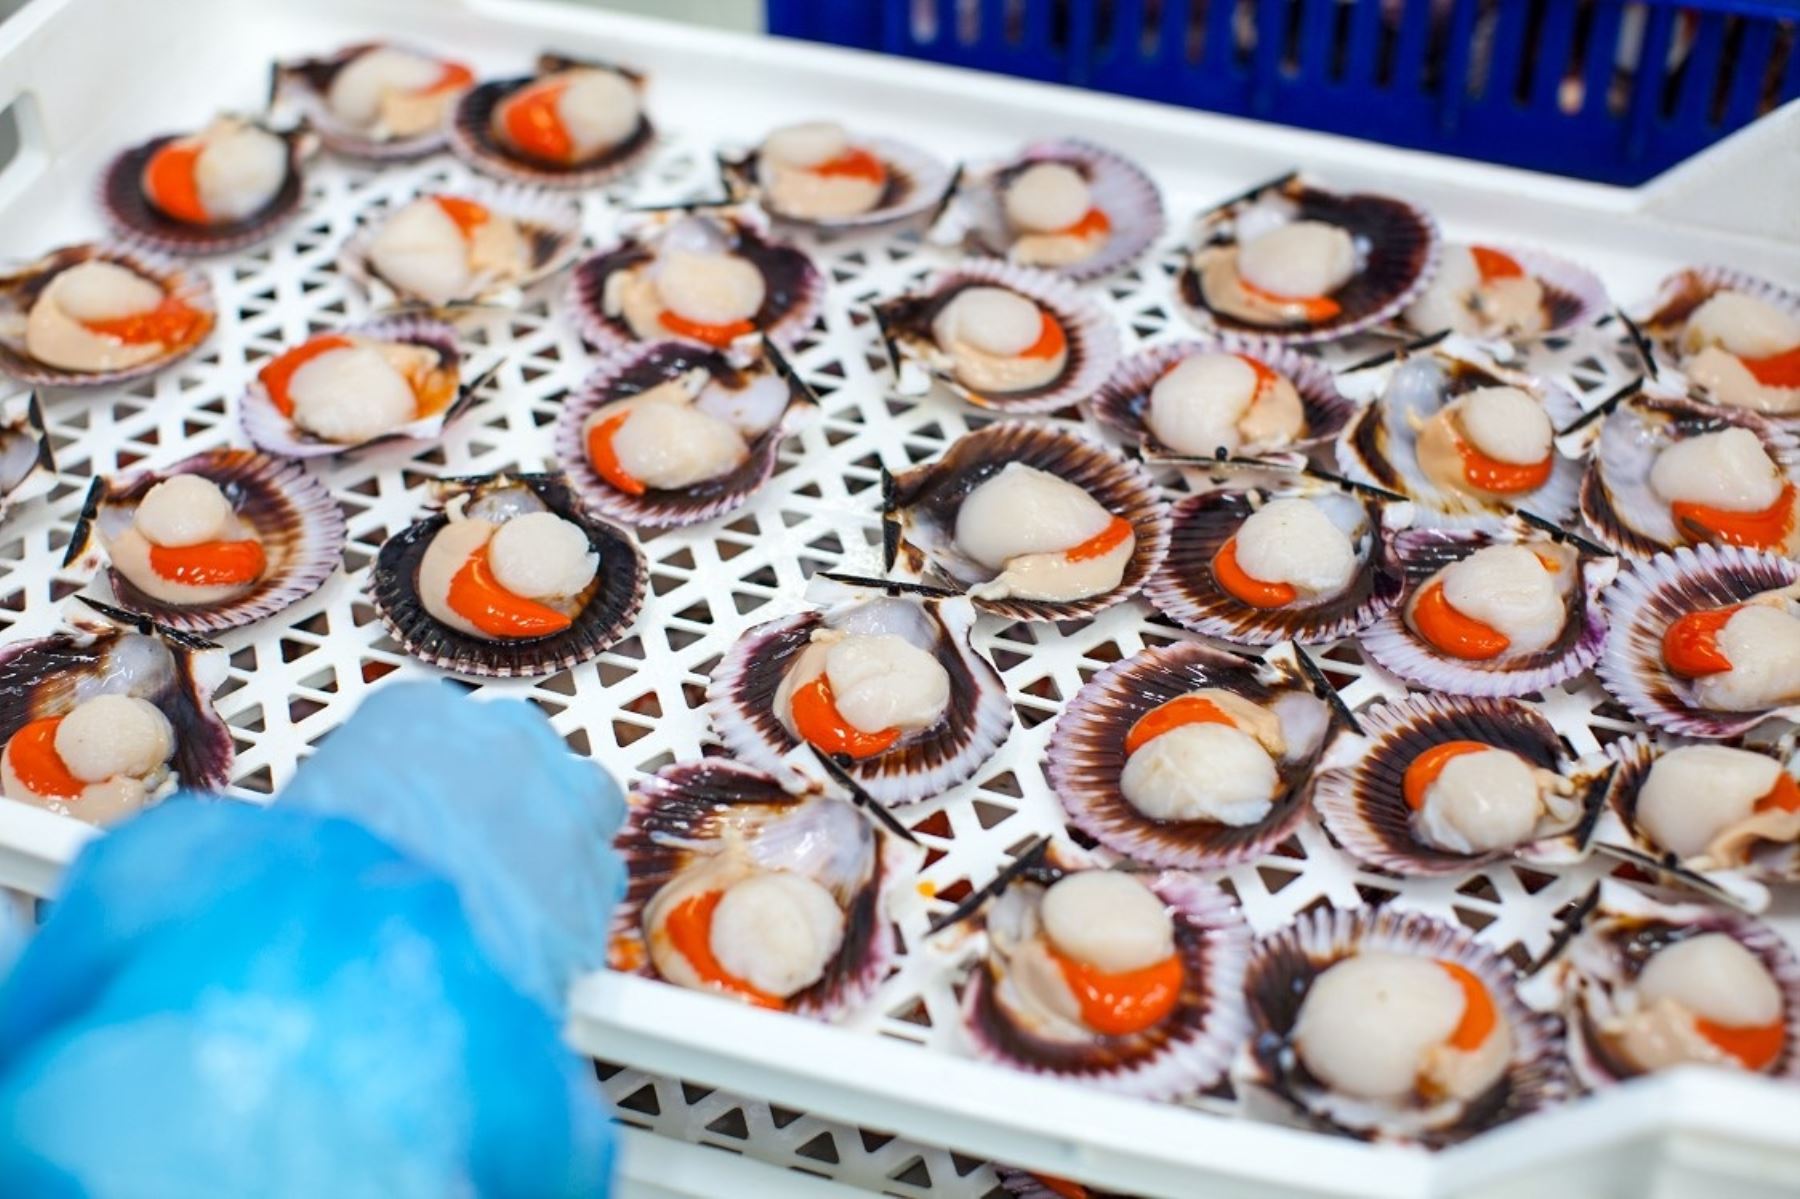 Moluscos bivalvos producidos en Perú reciben visto bueno de la Unión Europea. Foto: Cortesía.